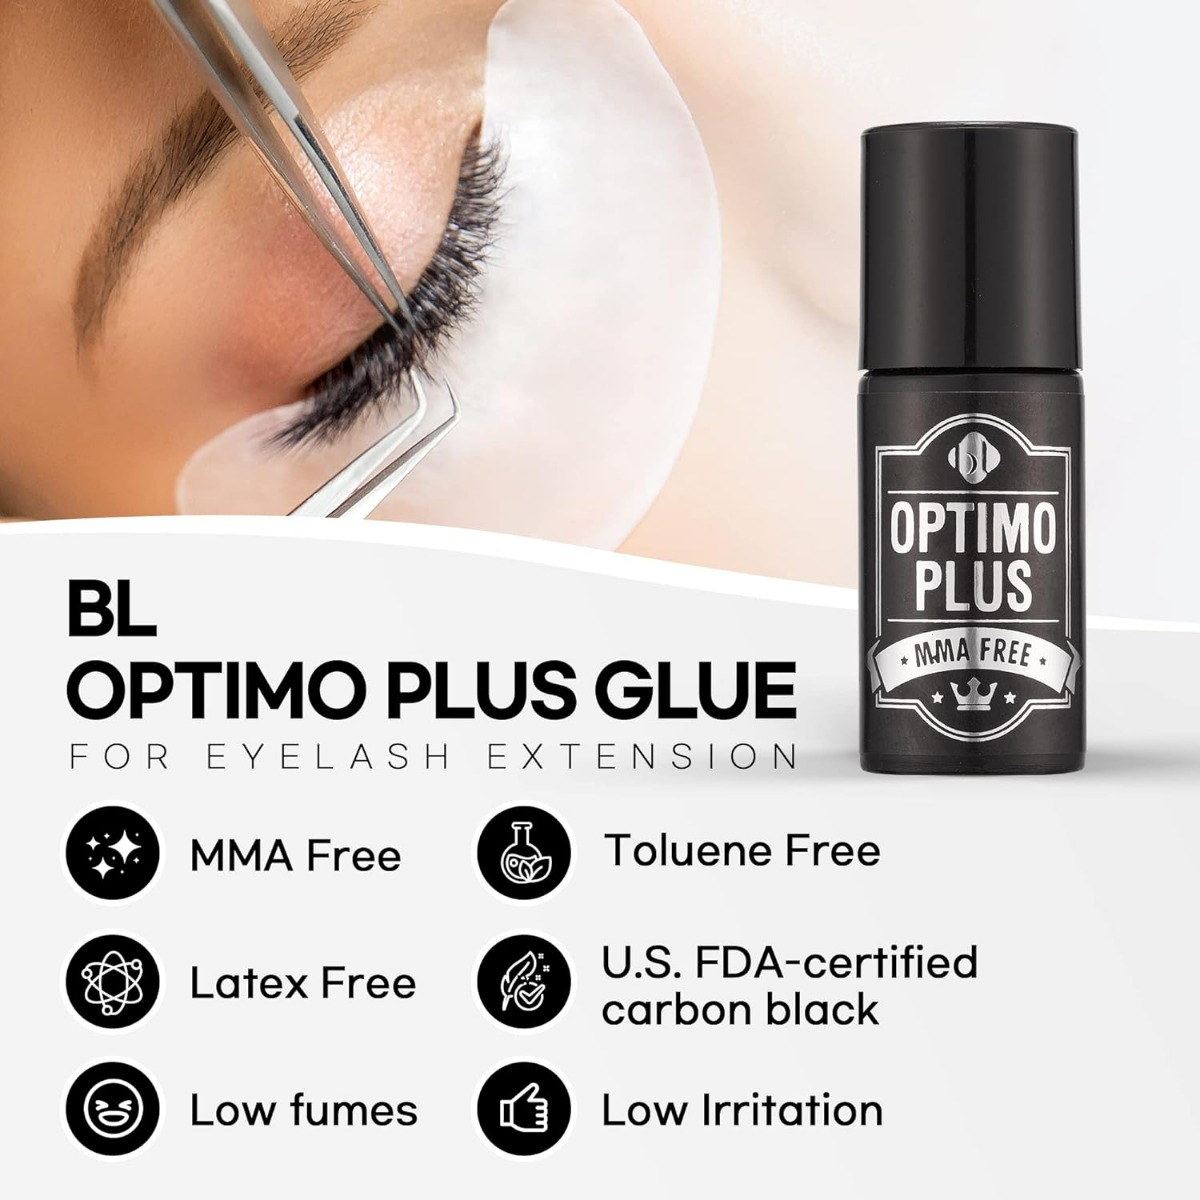 Blink BL Lashes Optimo Plus Glue 5g